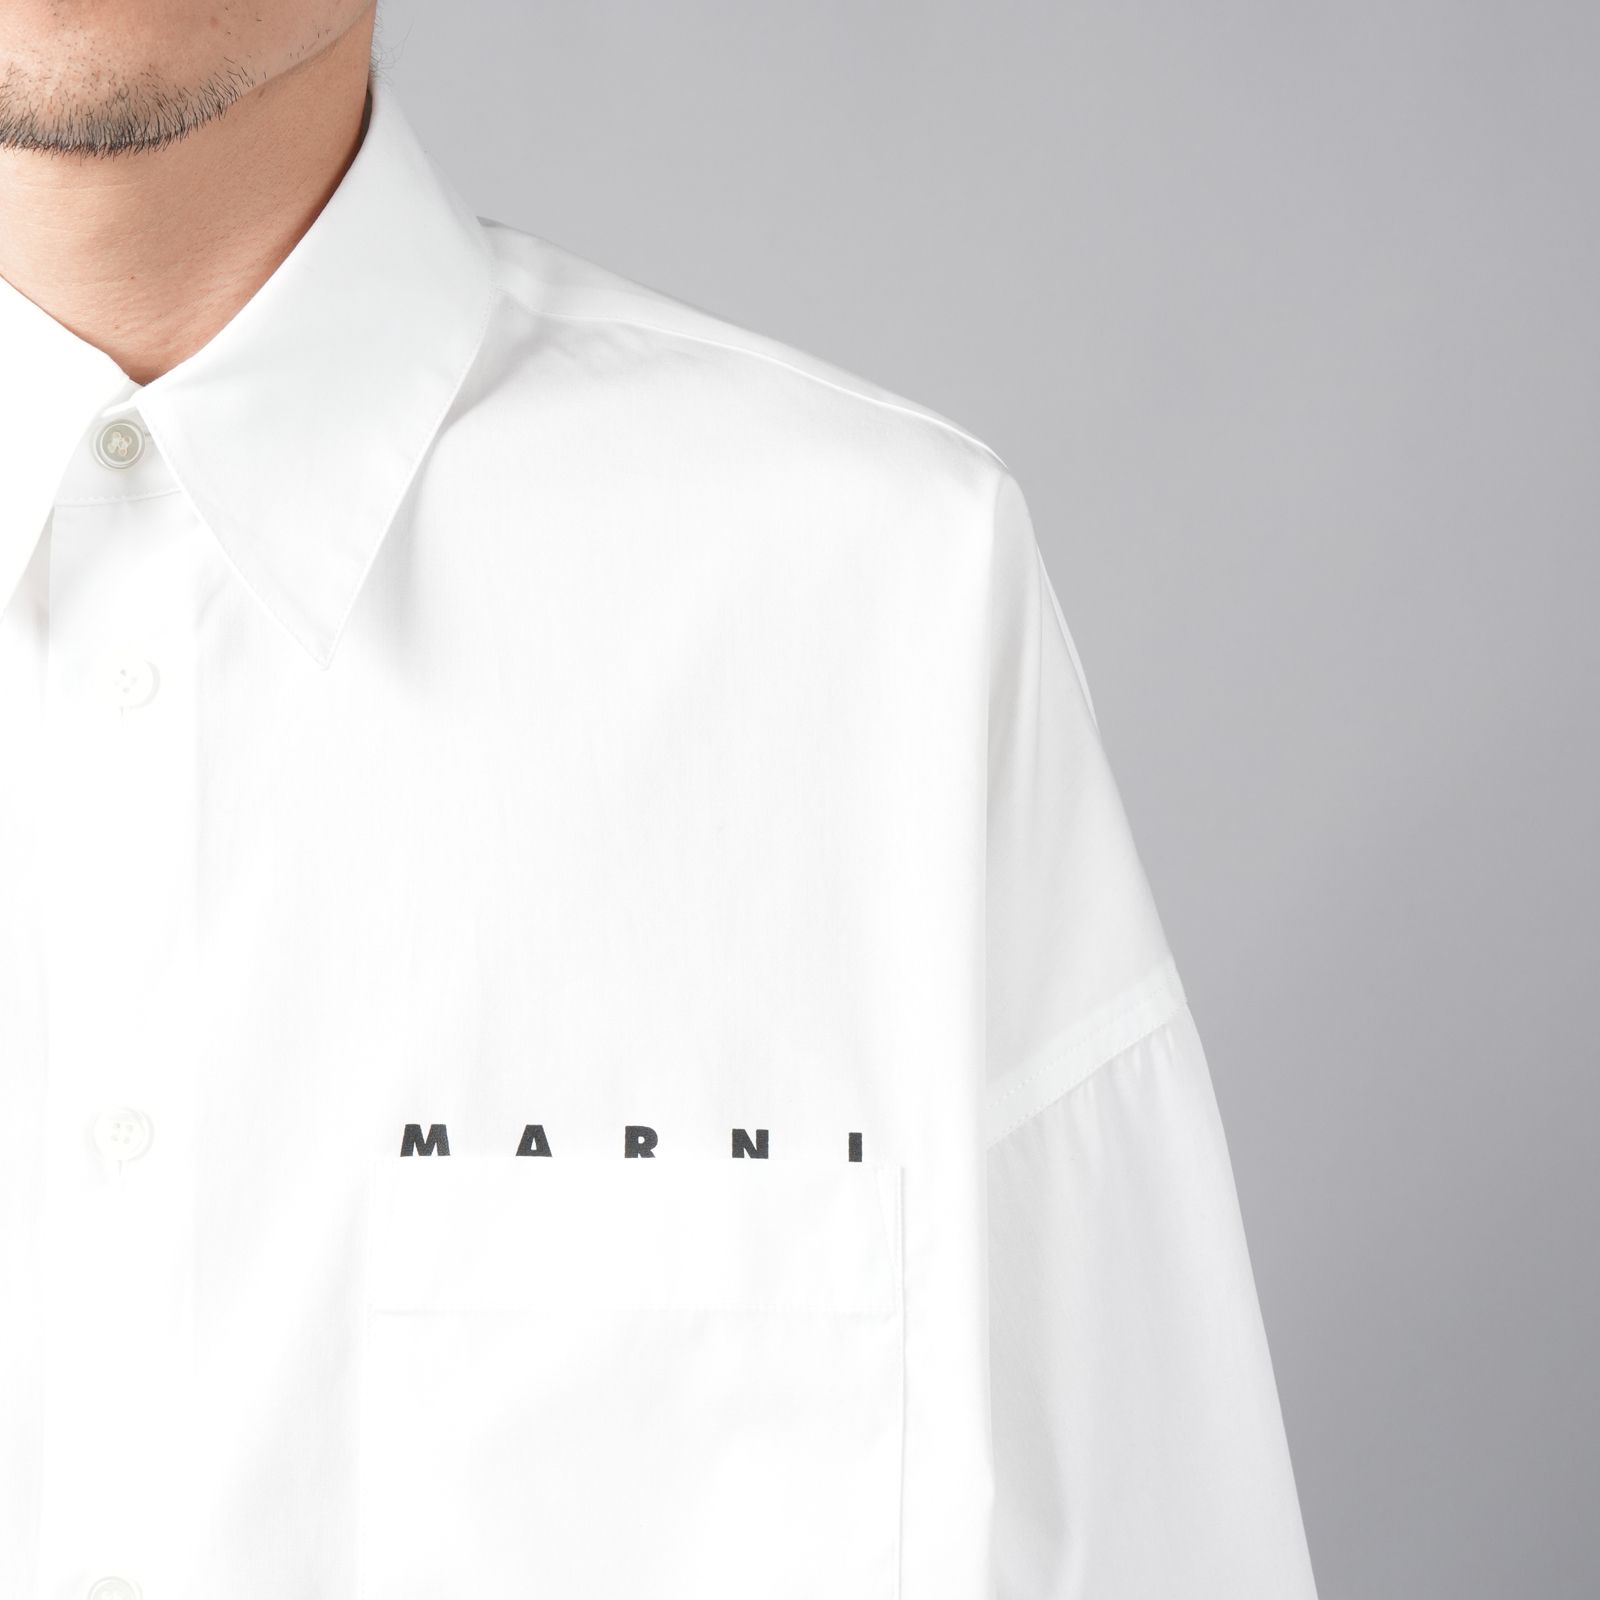 MARNI - L/S SHIRTS / ロングスリーブシャツ / 長袖シャツ (ホワイト